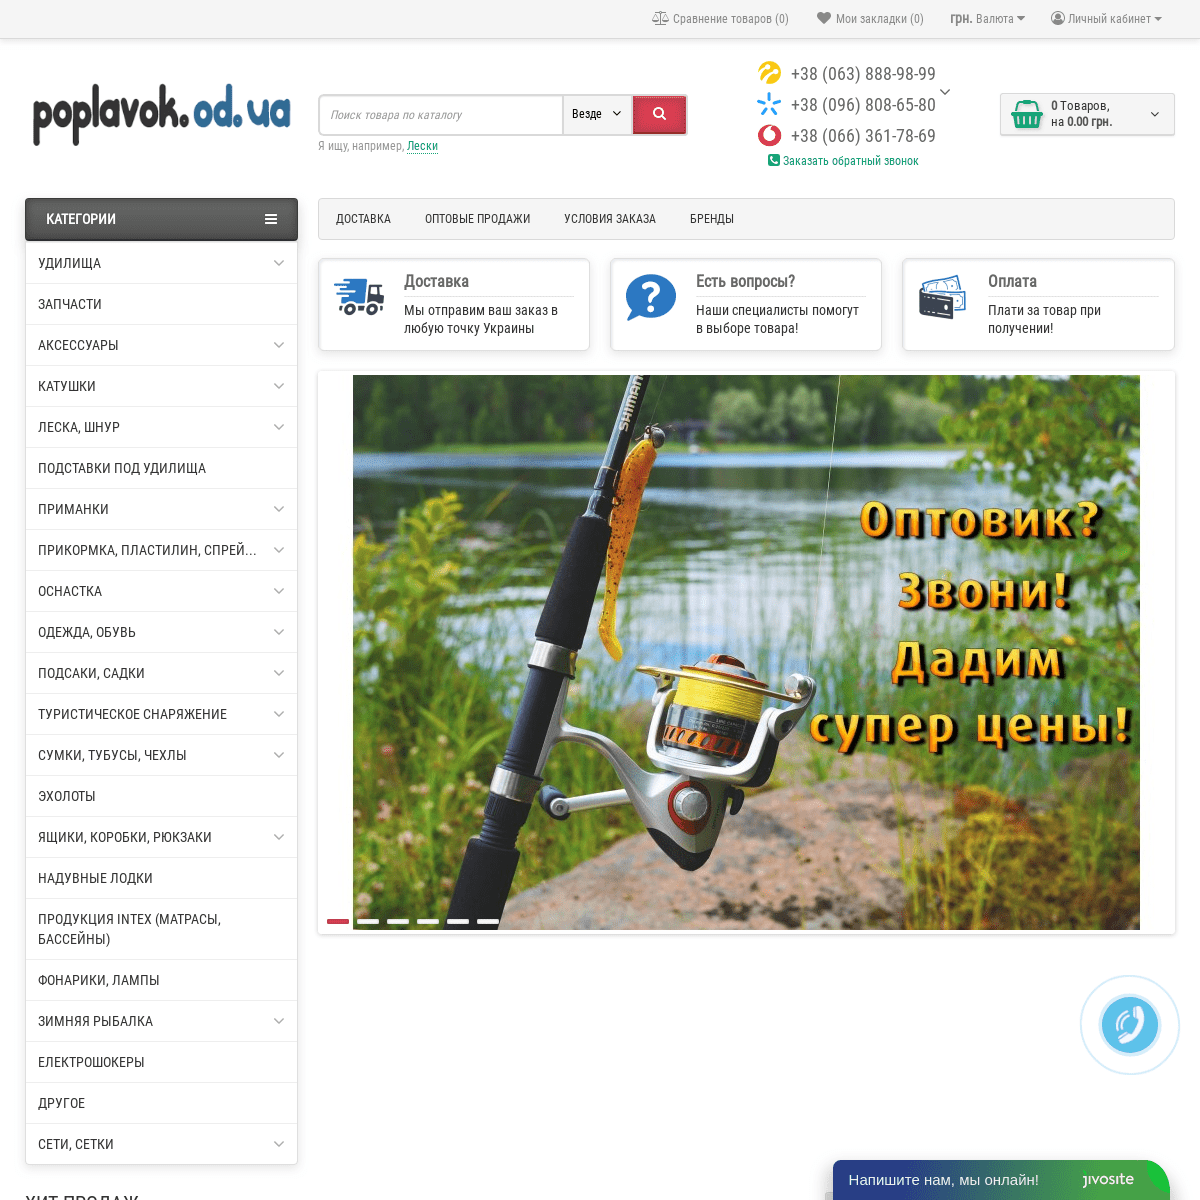 Интернет - магазин рыболовных снастей Poplavok